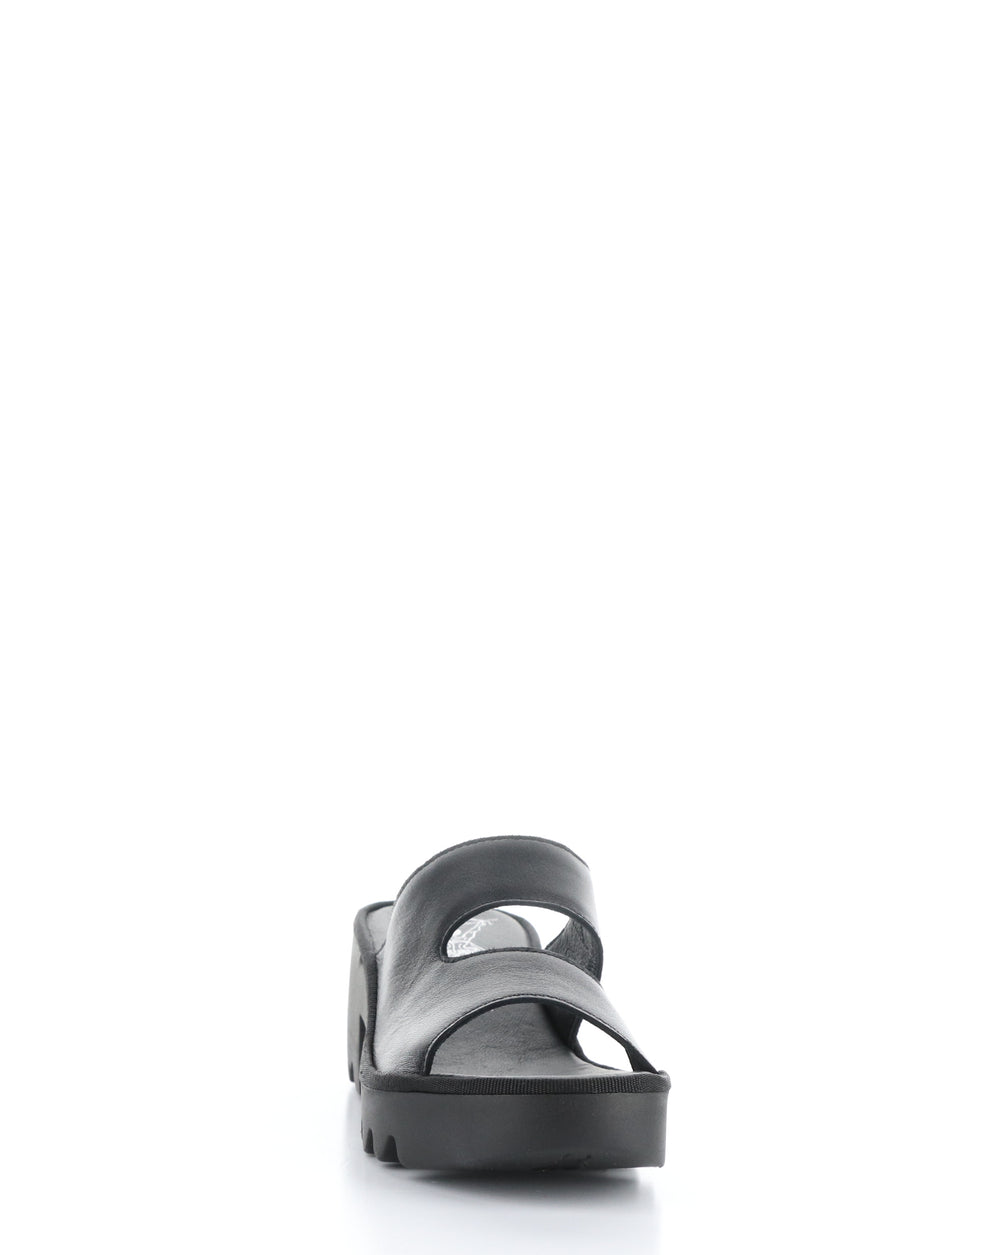 TECH493FLY 004 BLACK Slip-on Sandals